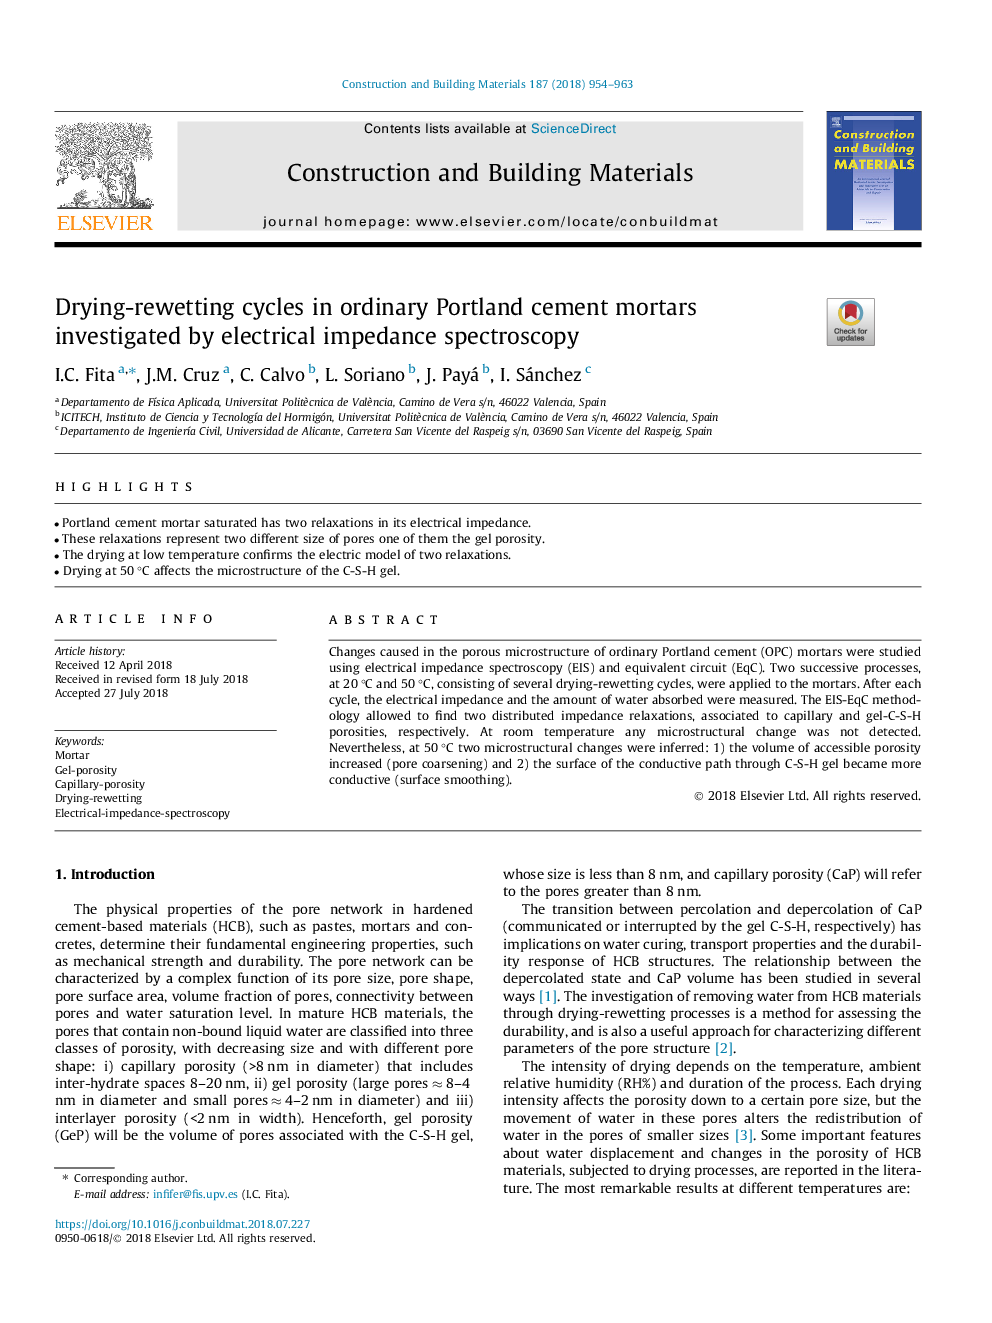 چرخه های خشک شدن و بازسازی در ملات سیمان پرتلند معمولی توسط طیف سنجی امپدانس الکتریکی بررسی شده است 